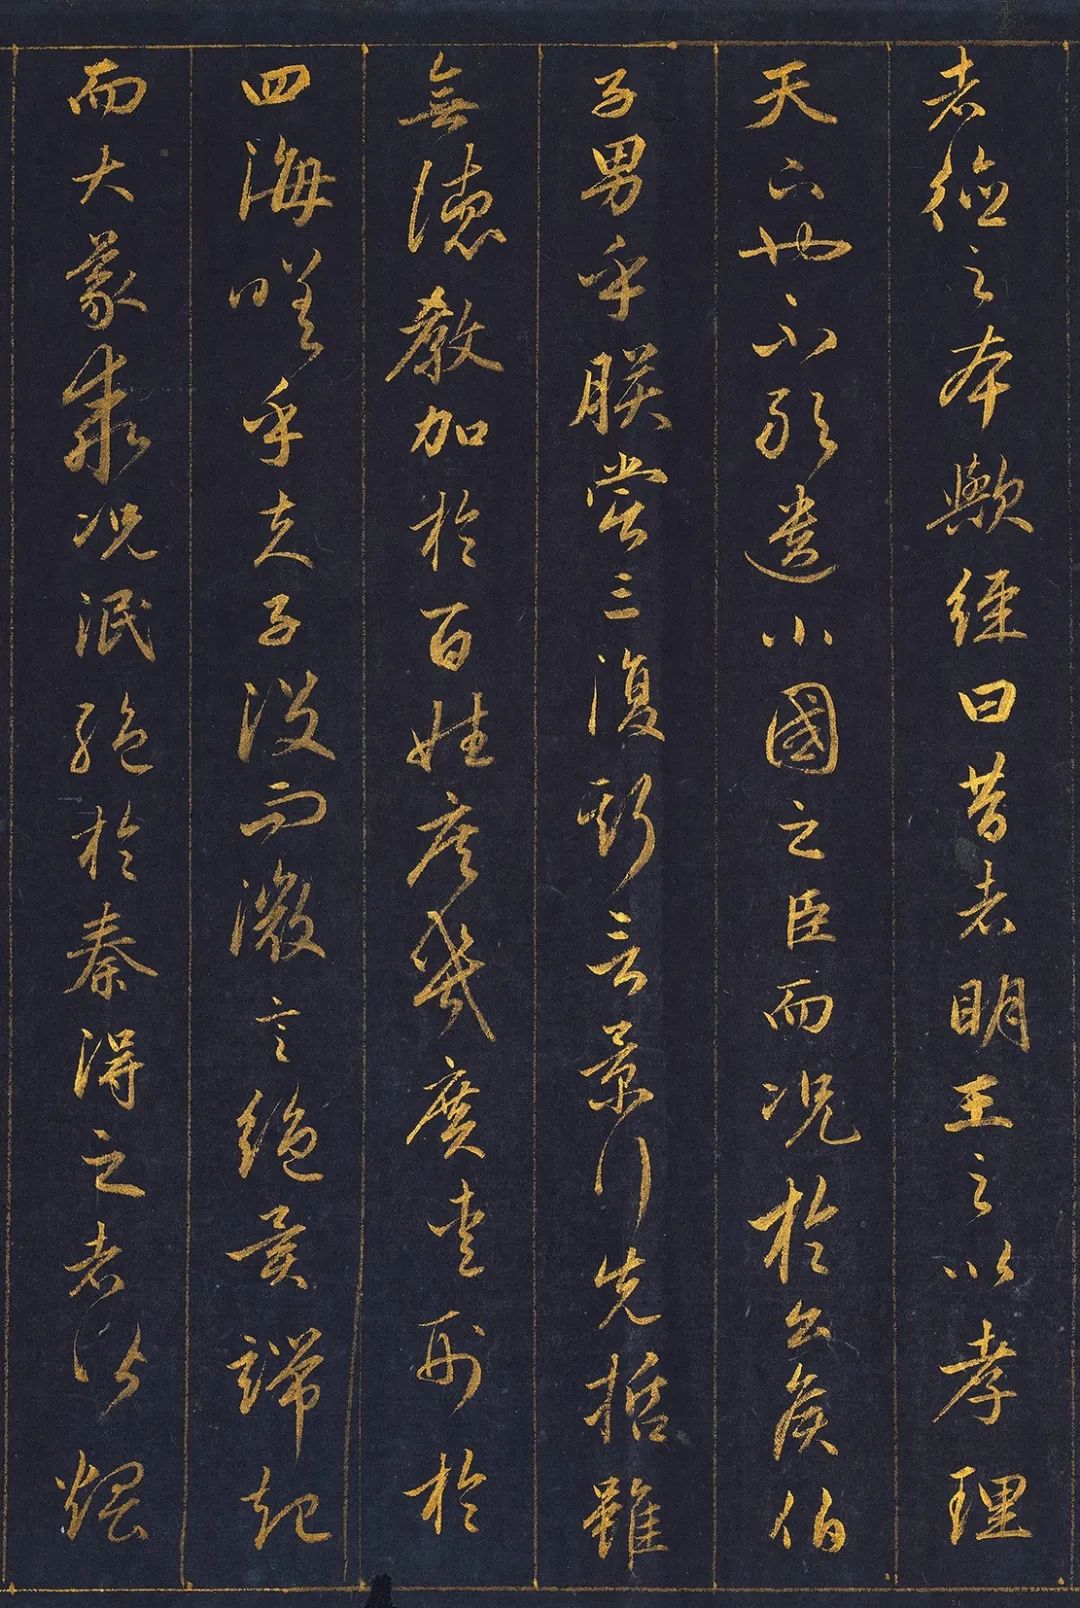 赵孟頫的泥金《孝经卷》,用10两黄金书写,堪称一字千金的典范